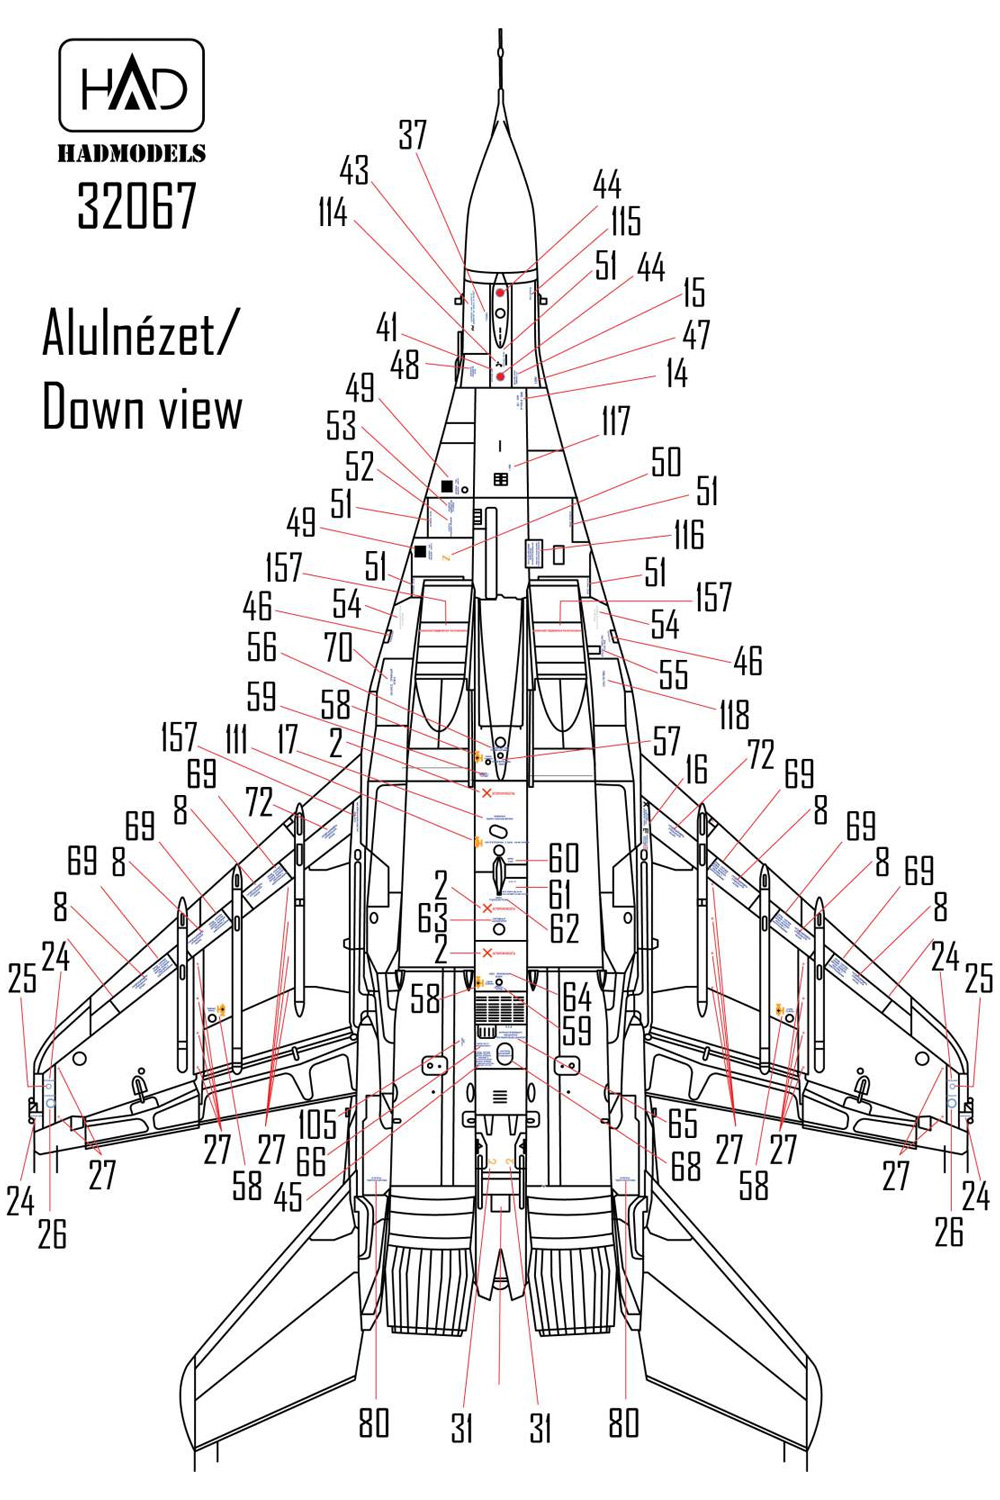 MiG-29 ファルクラム データーステンシル デカール (ロシア語、2機分) デカール (HAD MODELS 1/32 デカール No.32067) 商品画像_3